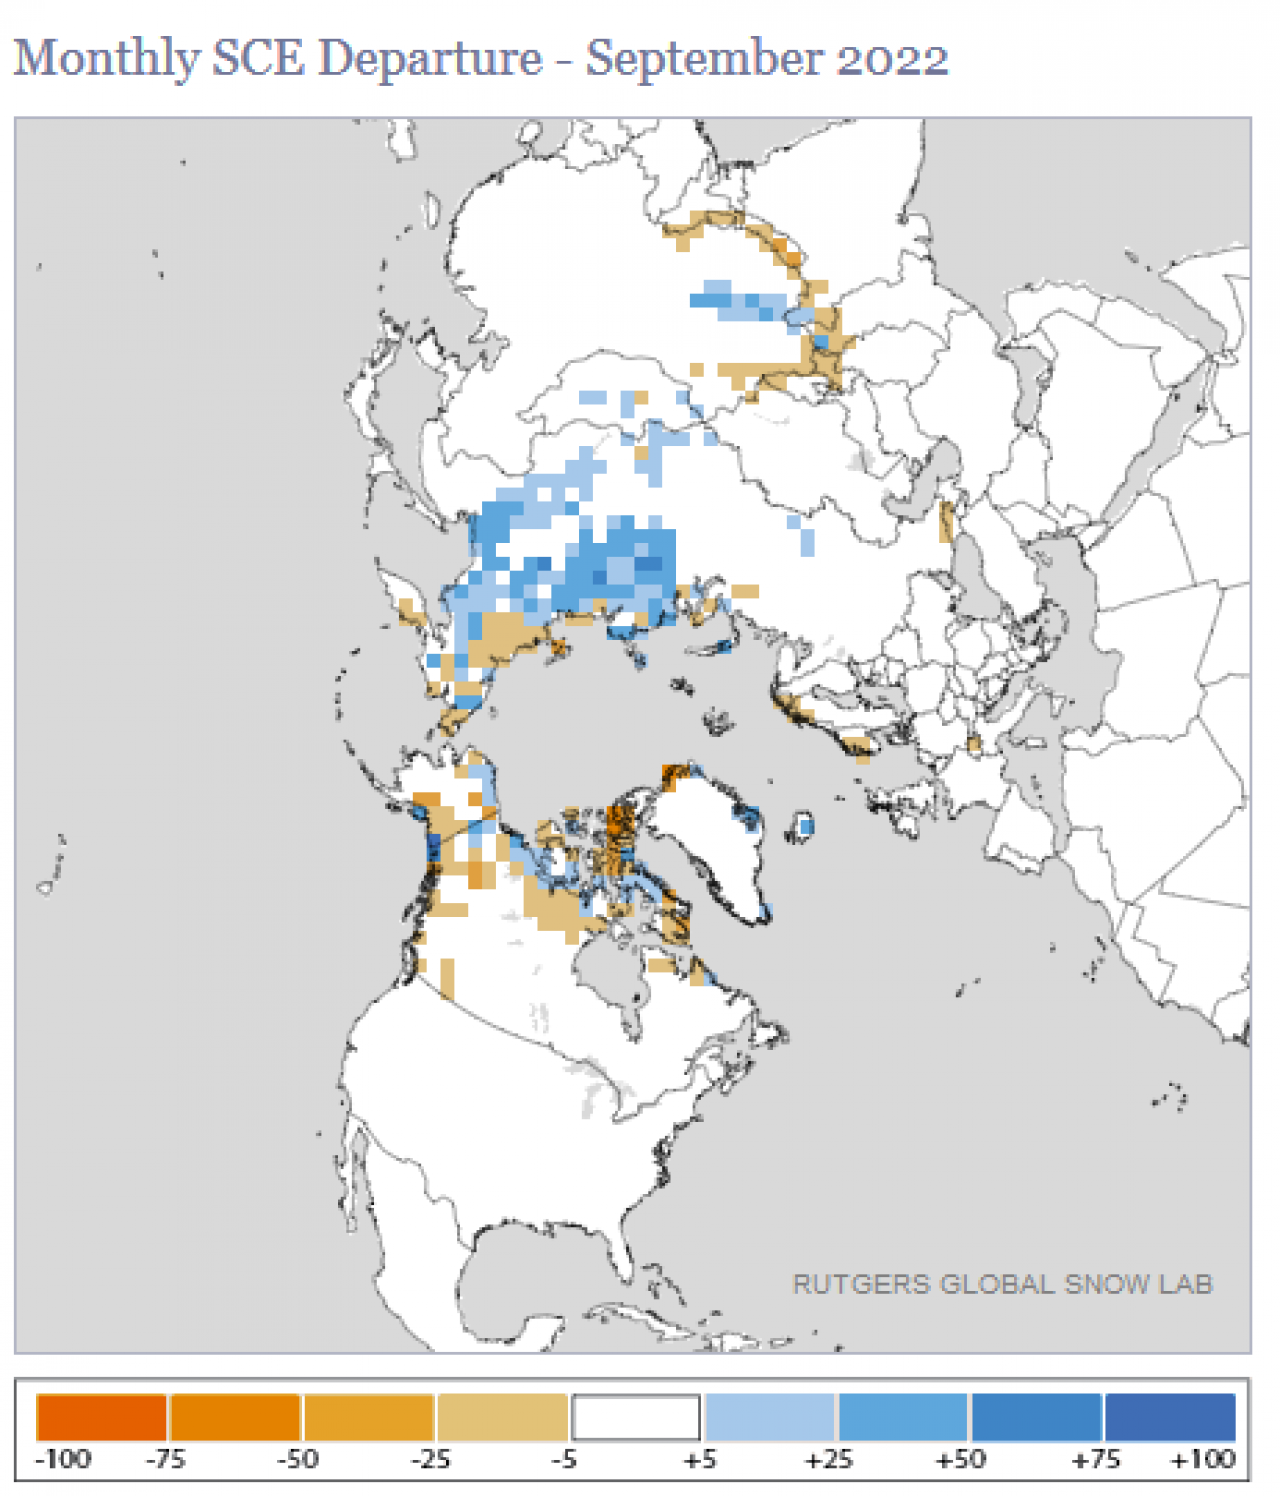 anomalie estensione copertura nevosa, fonte Rutgers Global Snow Lab